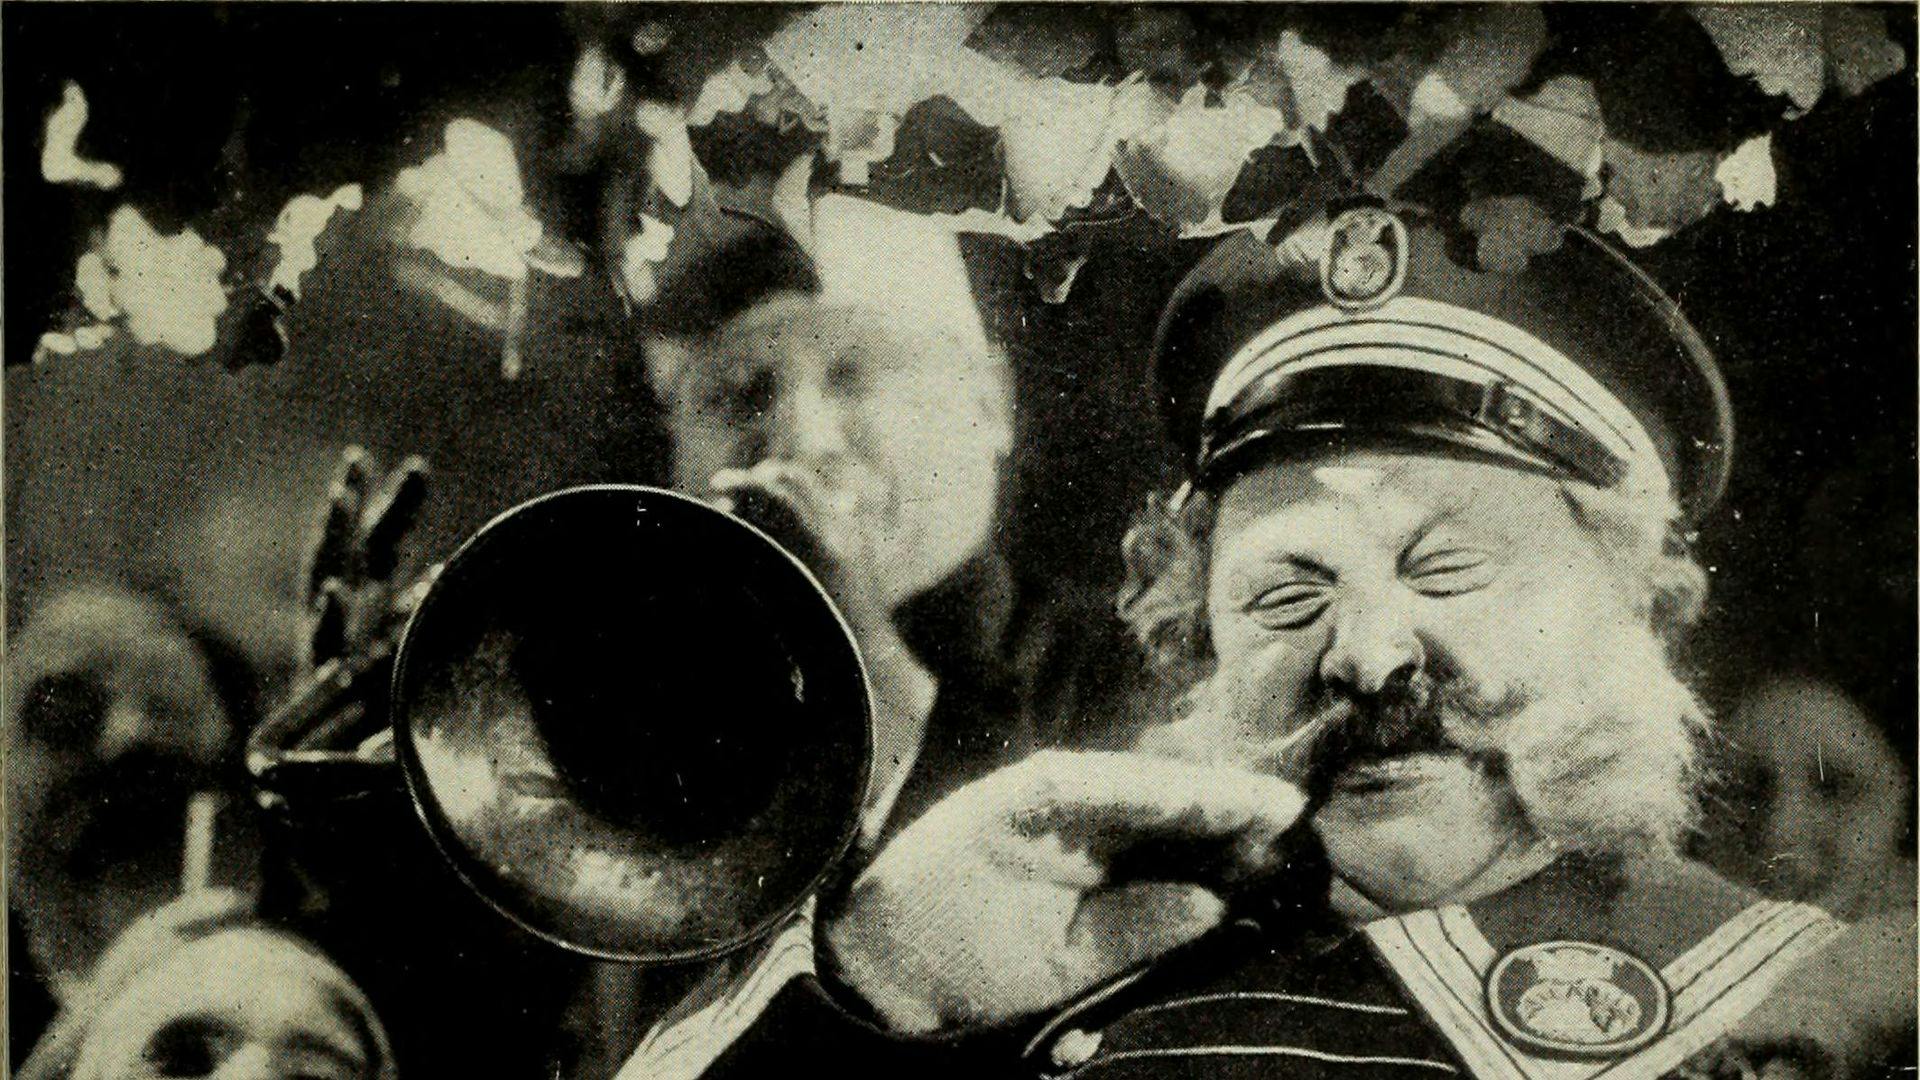 Film and live music - Olga Pashchenko + Jed Wentz - Der letzte Mann (1924)